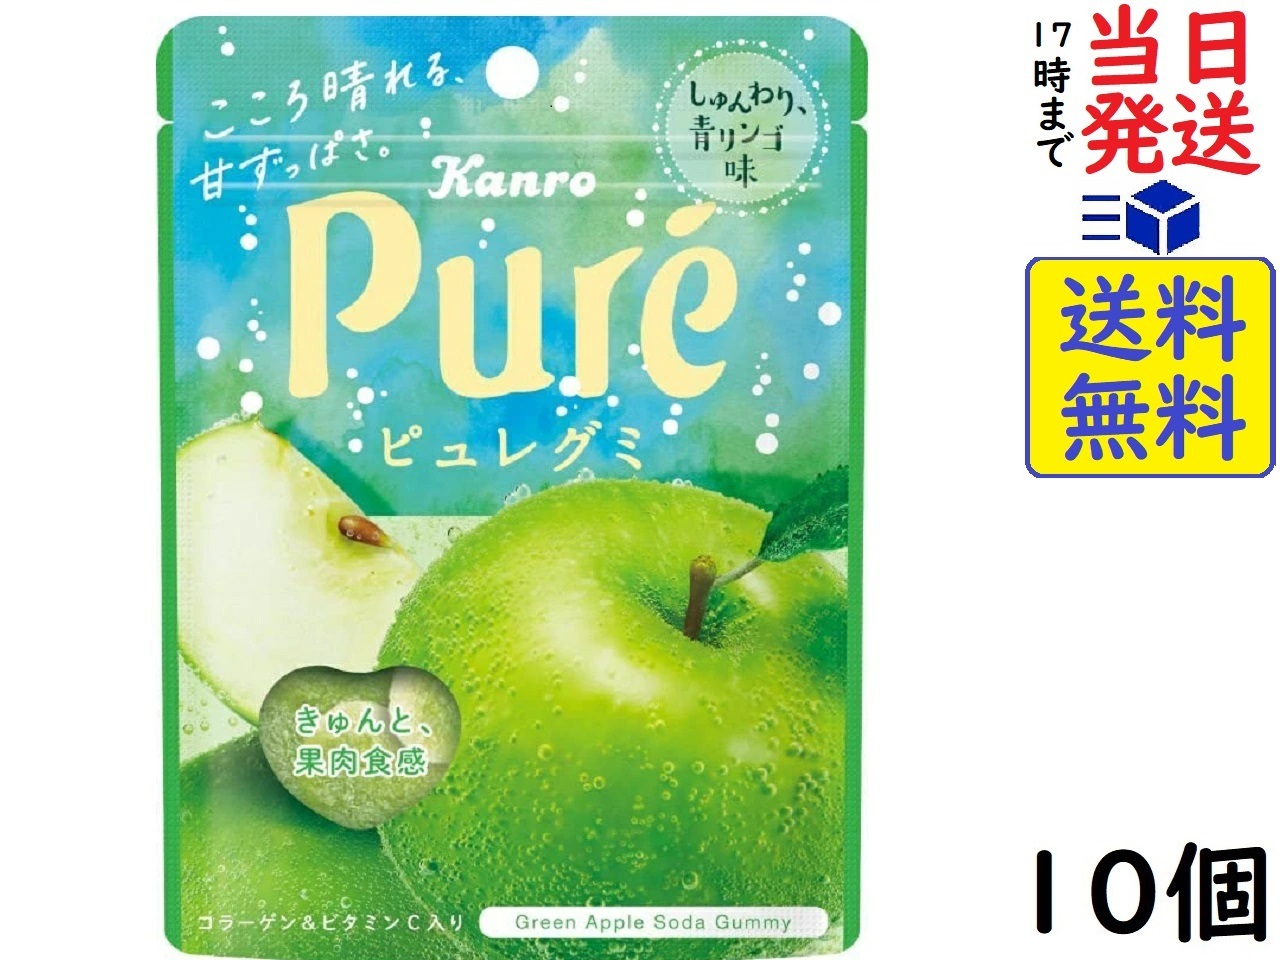 カンロ ピュレグミ しゅんわり 青りんご 52g ×10個賞味期限2023 11